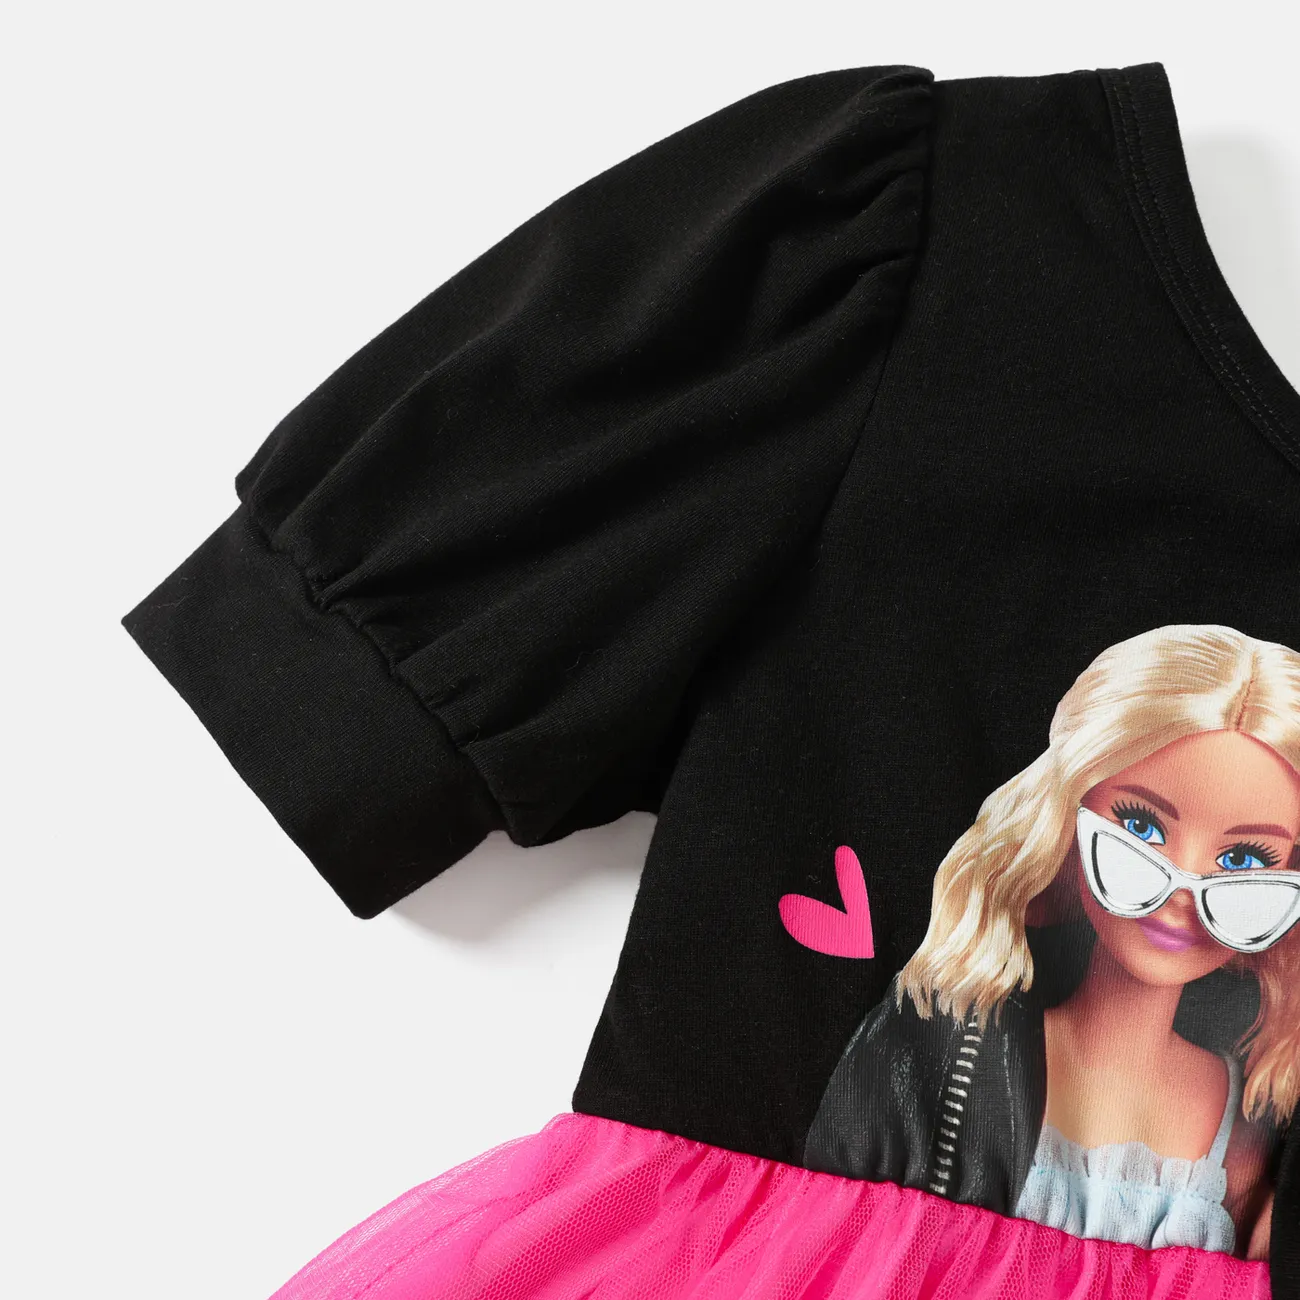 Barbie Kleinkinder Mädchen Abgeschrägte Schulter Süß Kleider schwarz big image 1